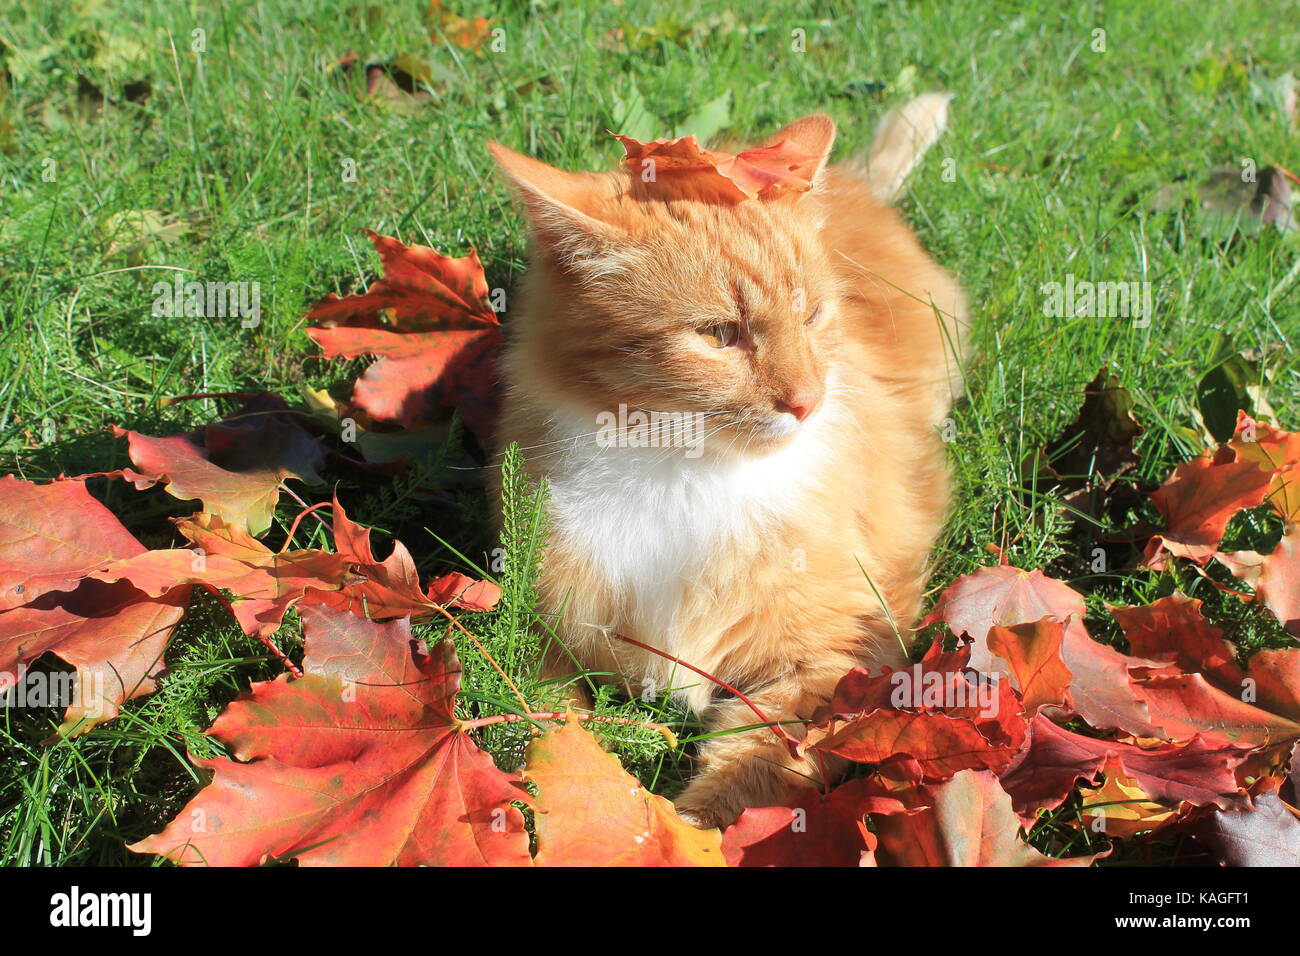 Belle couleur orange vif fluffy cat jouer sur l'herbe verte dans le feuillage d'érable rouge dans la chaude journée ensoleillée Banque D'Images